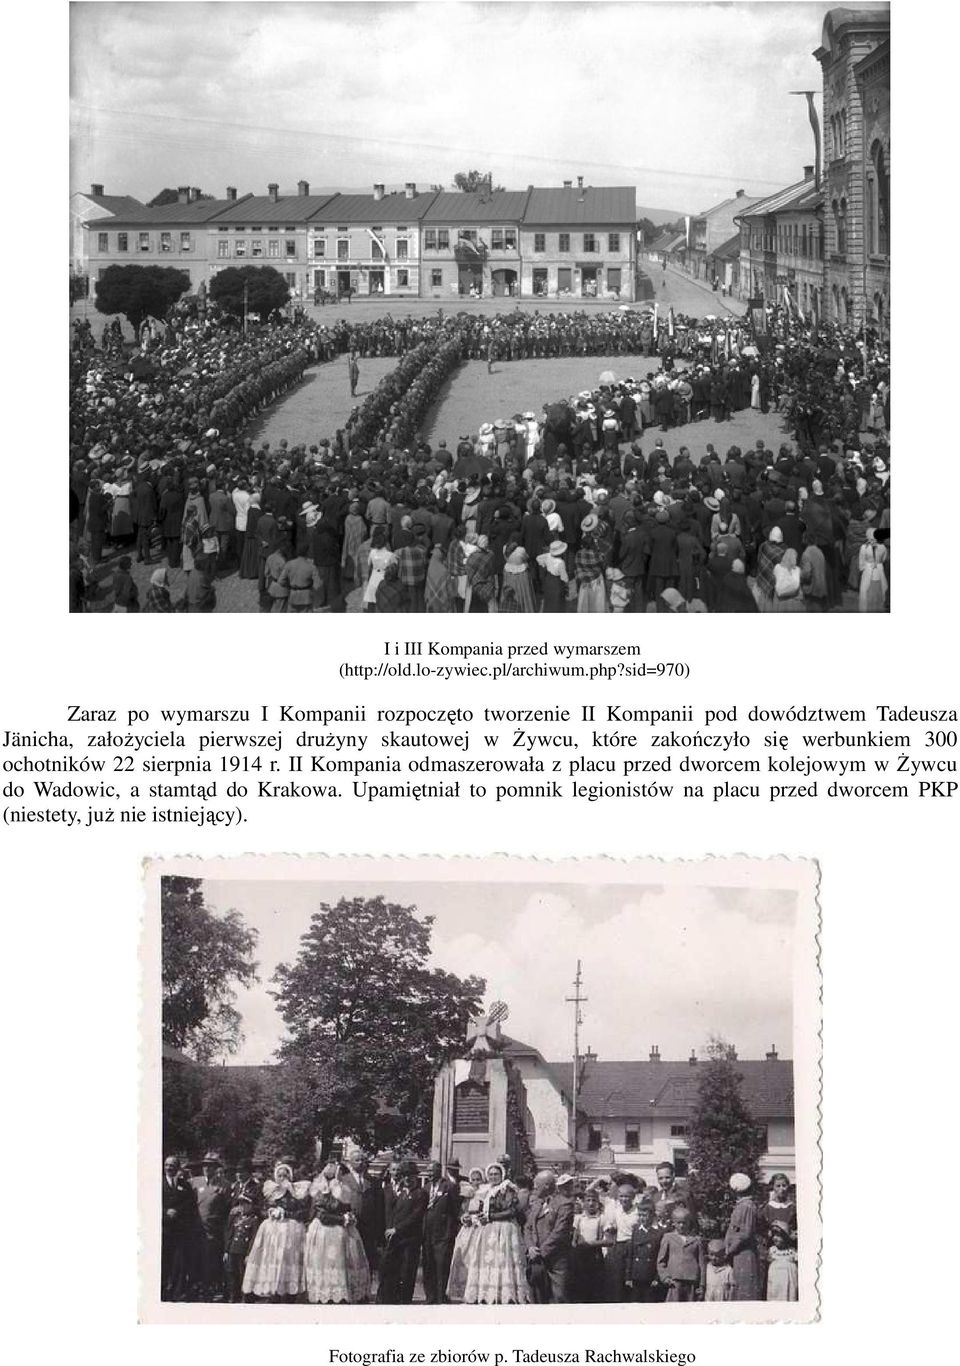 1914 r. II Kompania odmaszerowała z placu przed dworcem kolejowym w Żywcu do Wadowic, a stamtąd do Krakowa.